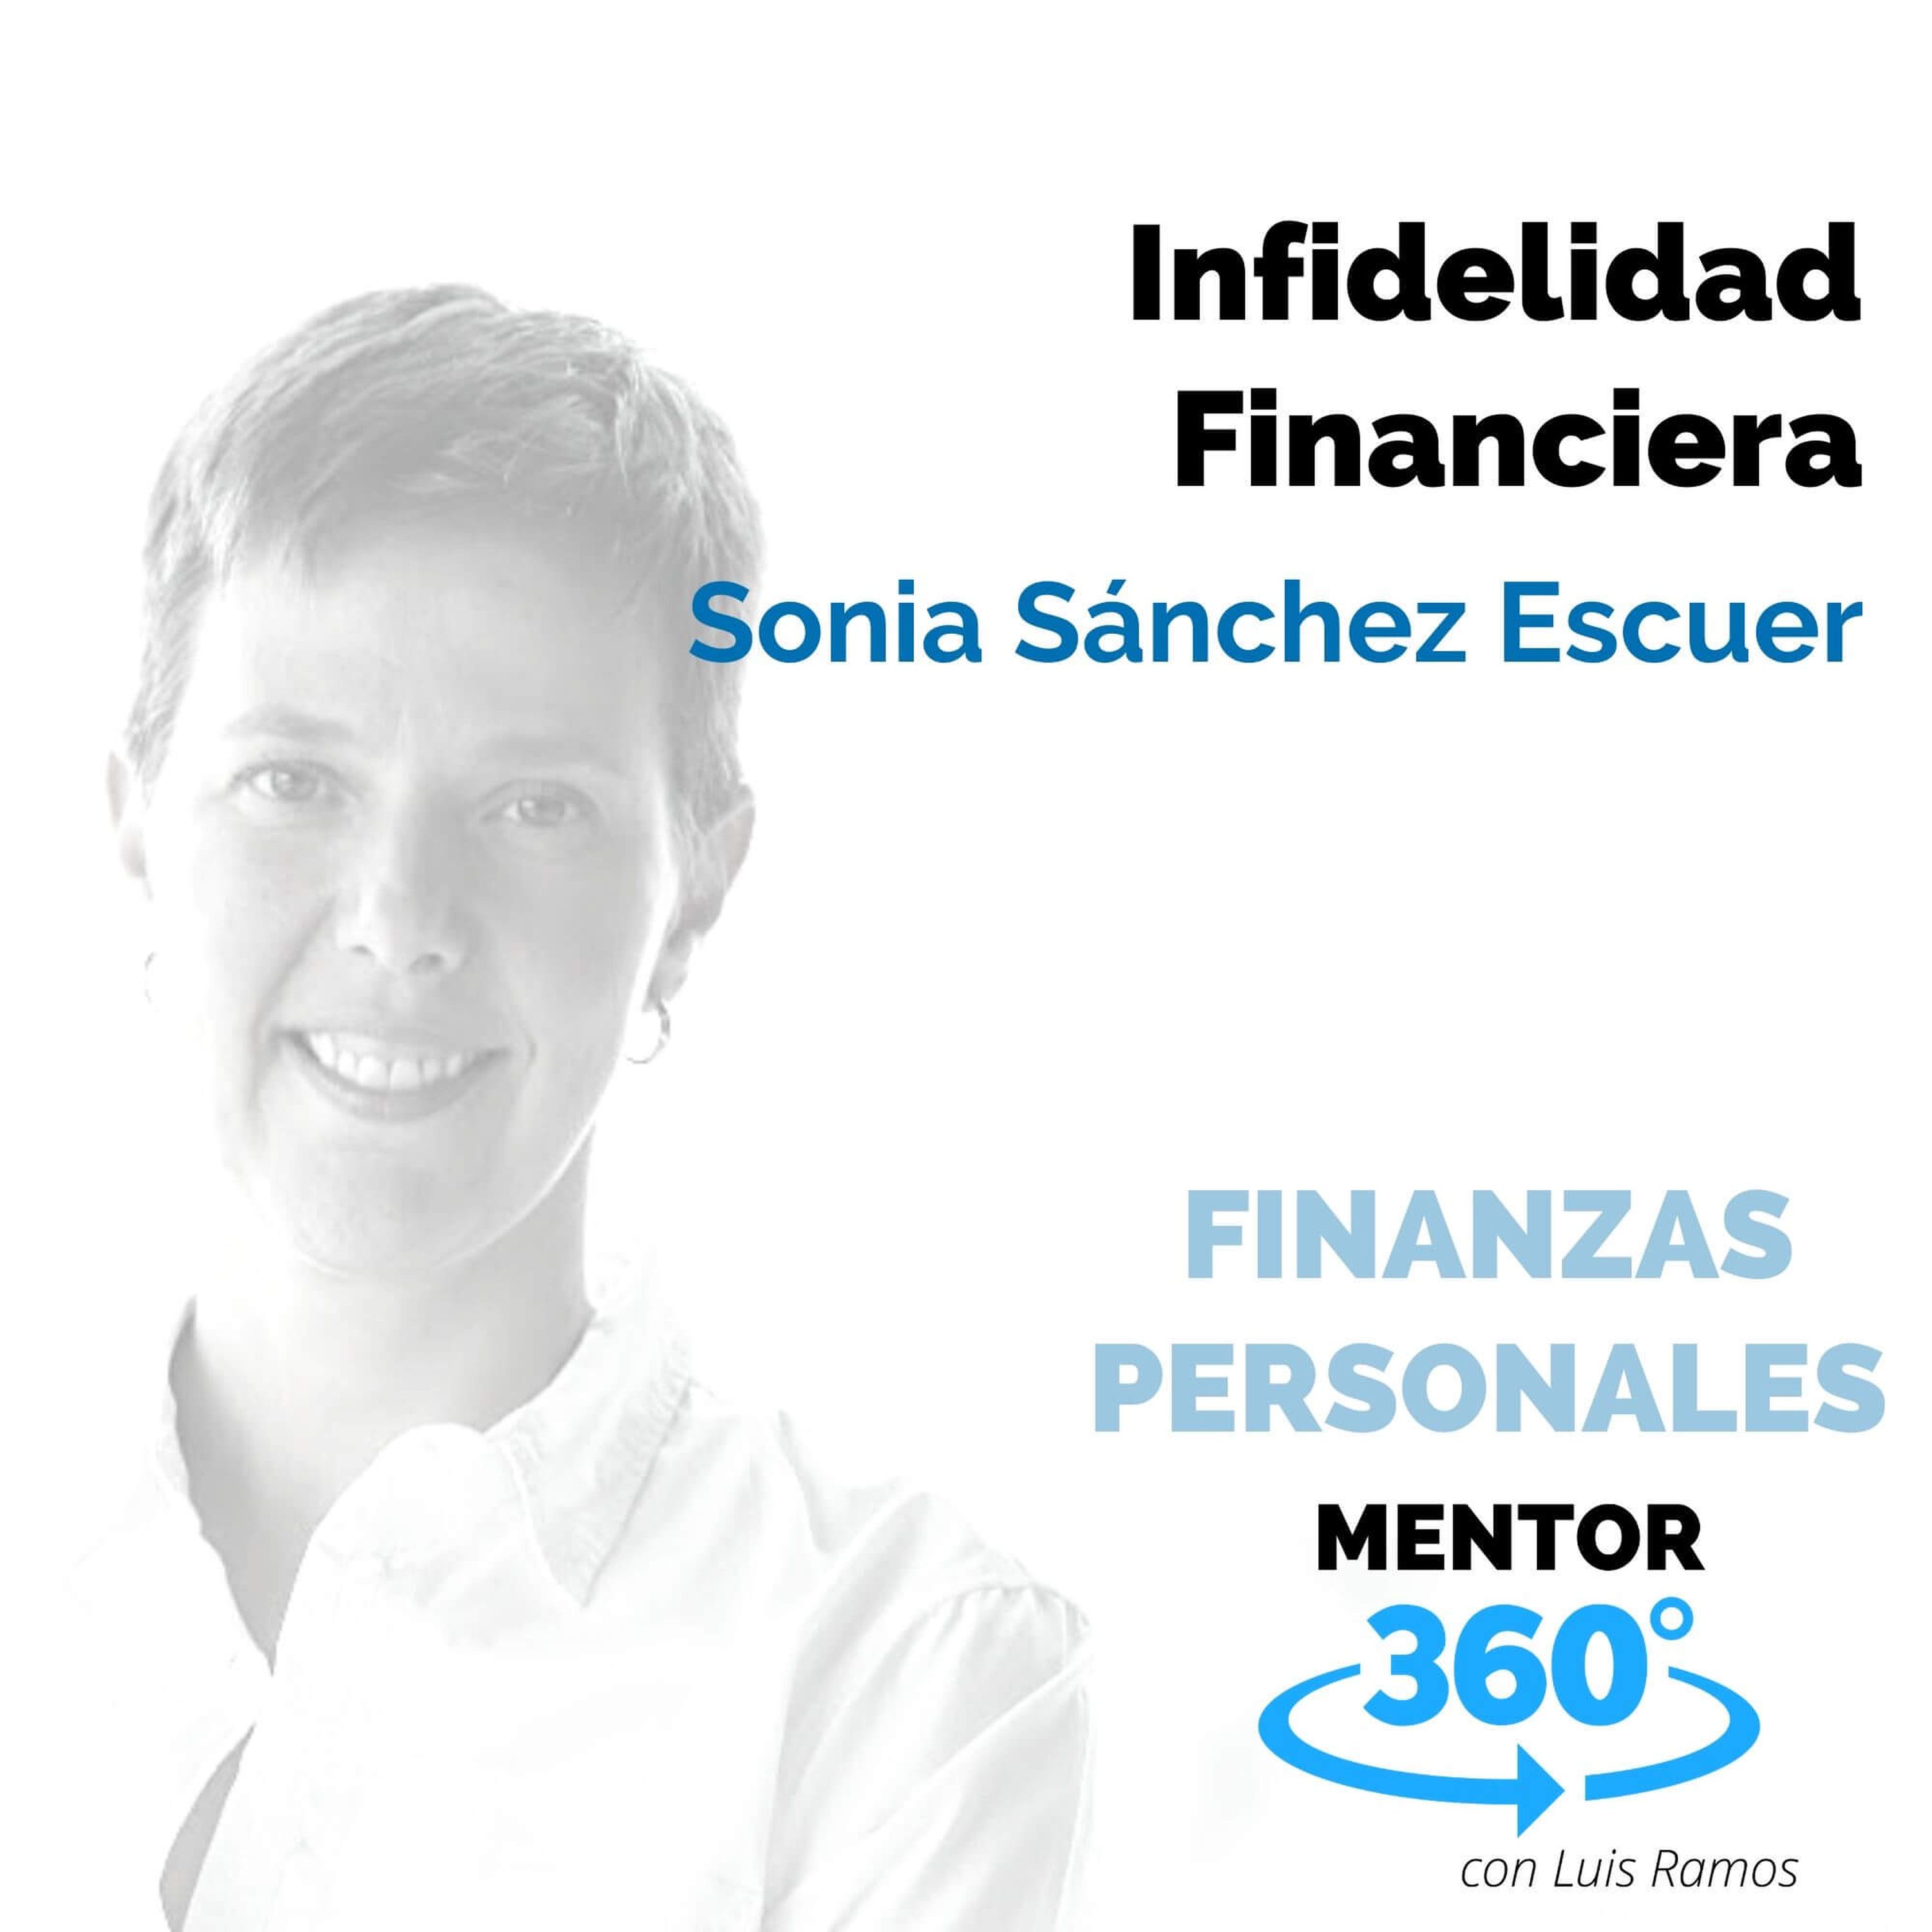 Infidelidad Financiera, con Sonia Sánchez Escuer - FINANZAS PERSONALES